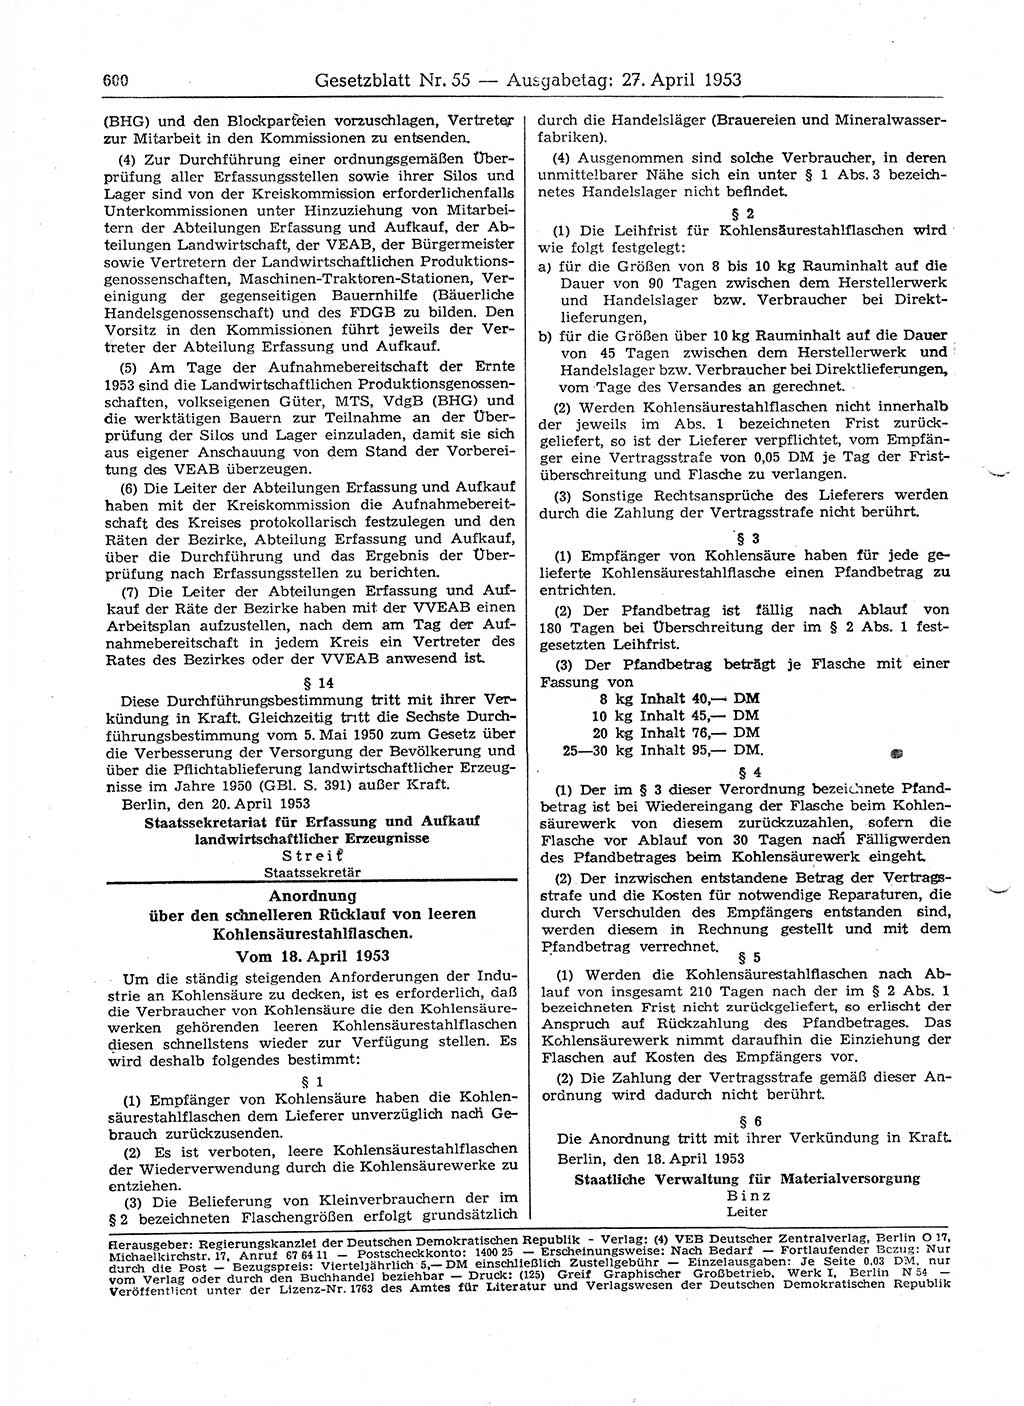 Gesetzblatt (GBl.) der Deutschen Demokratischen Republik (DDR) 1953, Seite 600 (GBl. DDR 1953, S. 600)